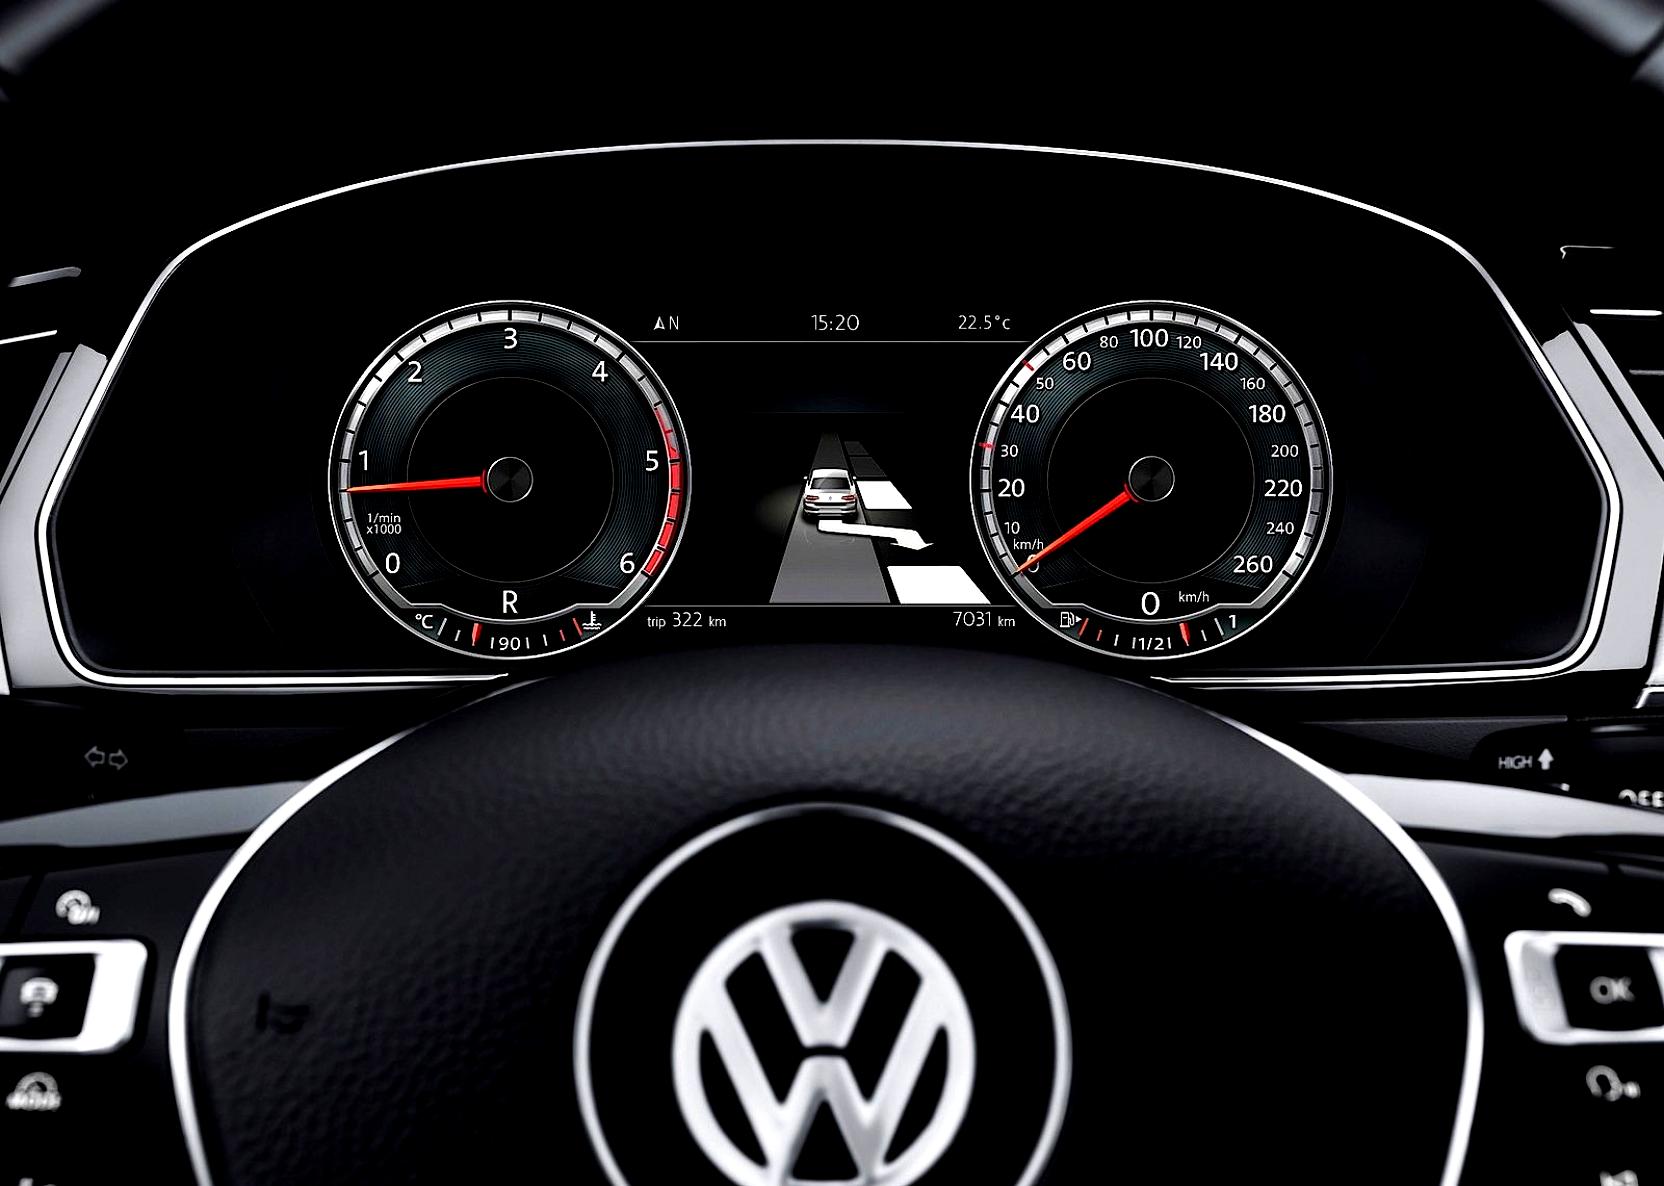 Volkswagen Passat 2014 #97